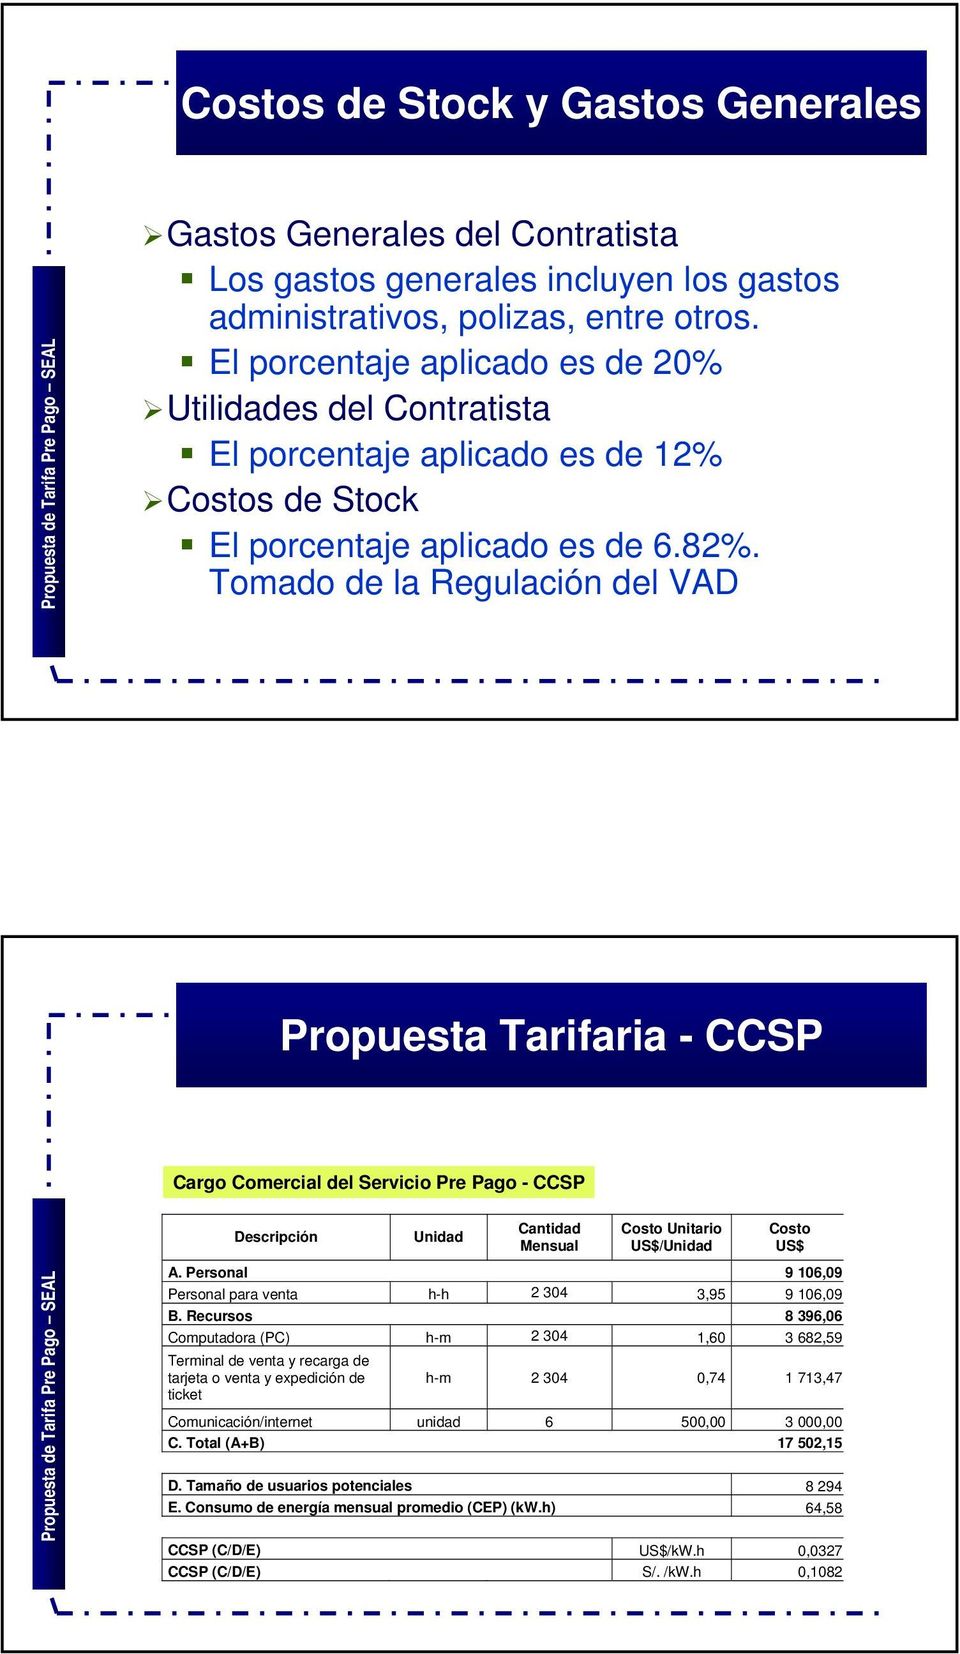 Tomado de la Regulación del VAD Propuesta Tarifaria - CCSP Cargo Comercial del Servicio del Servicio Prepago Pre (CCSP) Pago - CCSP Descripción Unidad Cantidad Mensual Costo Unitario US$/Unidad Costo